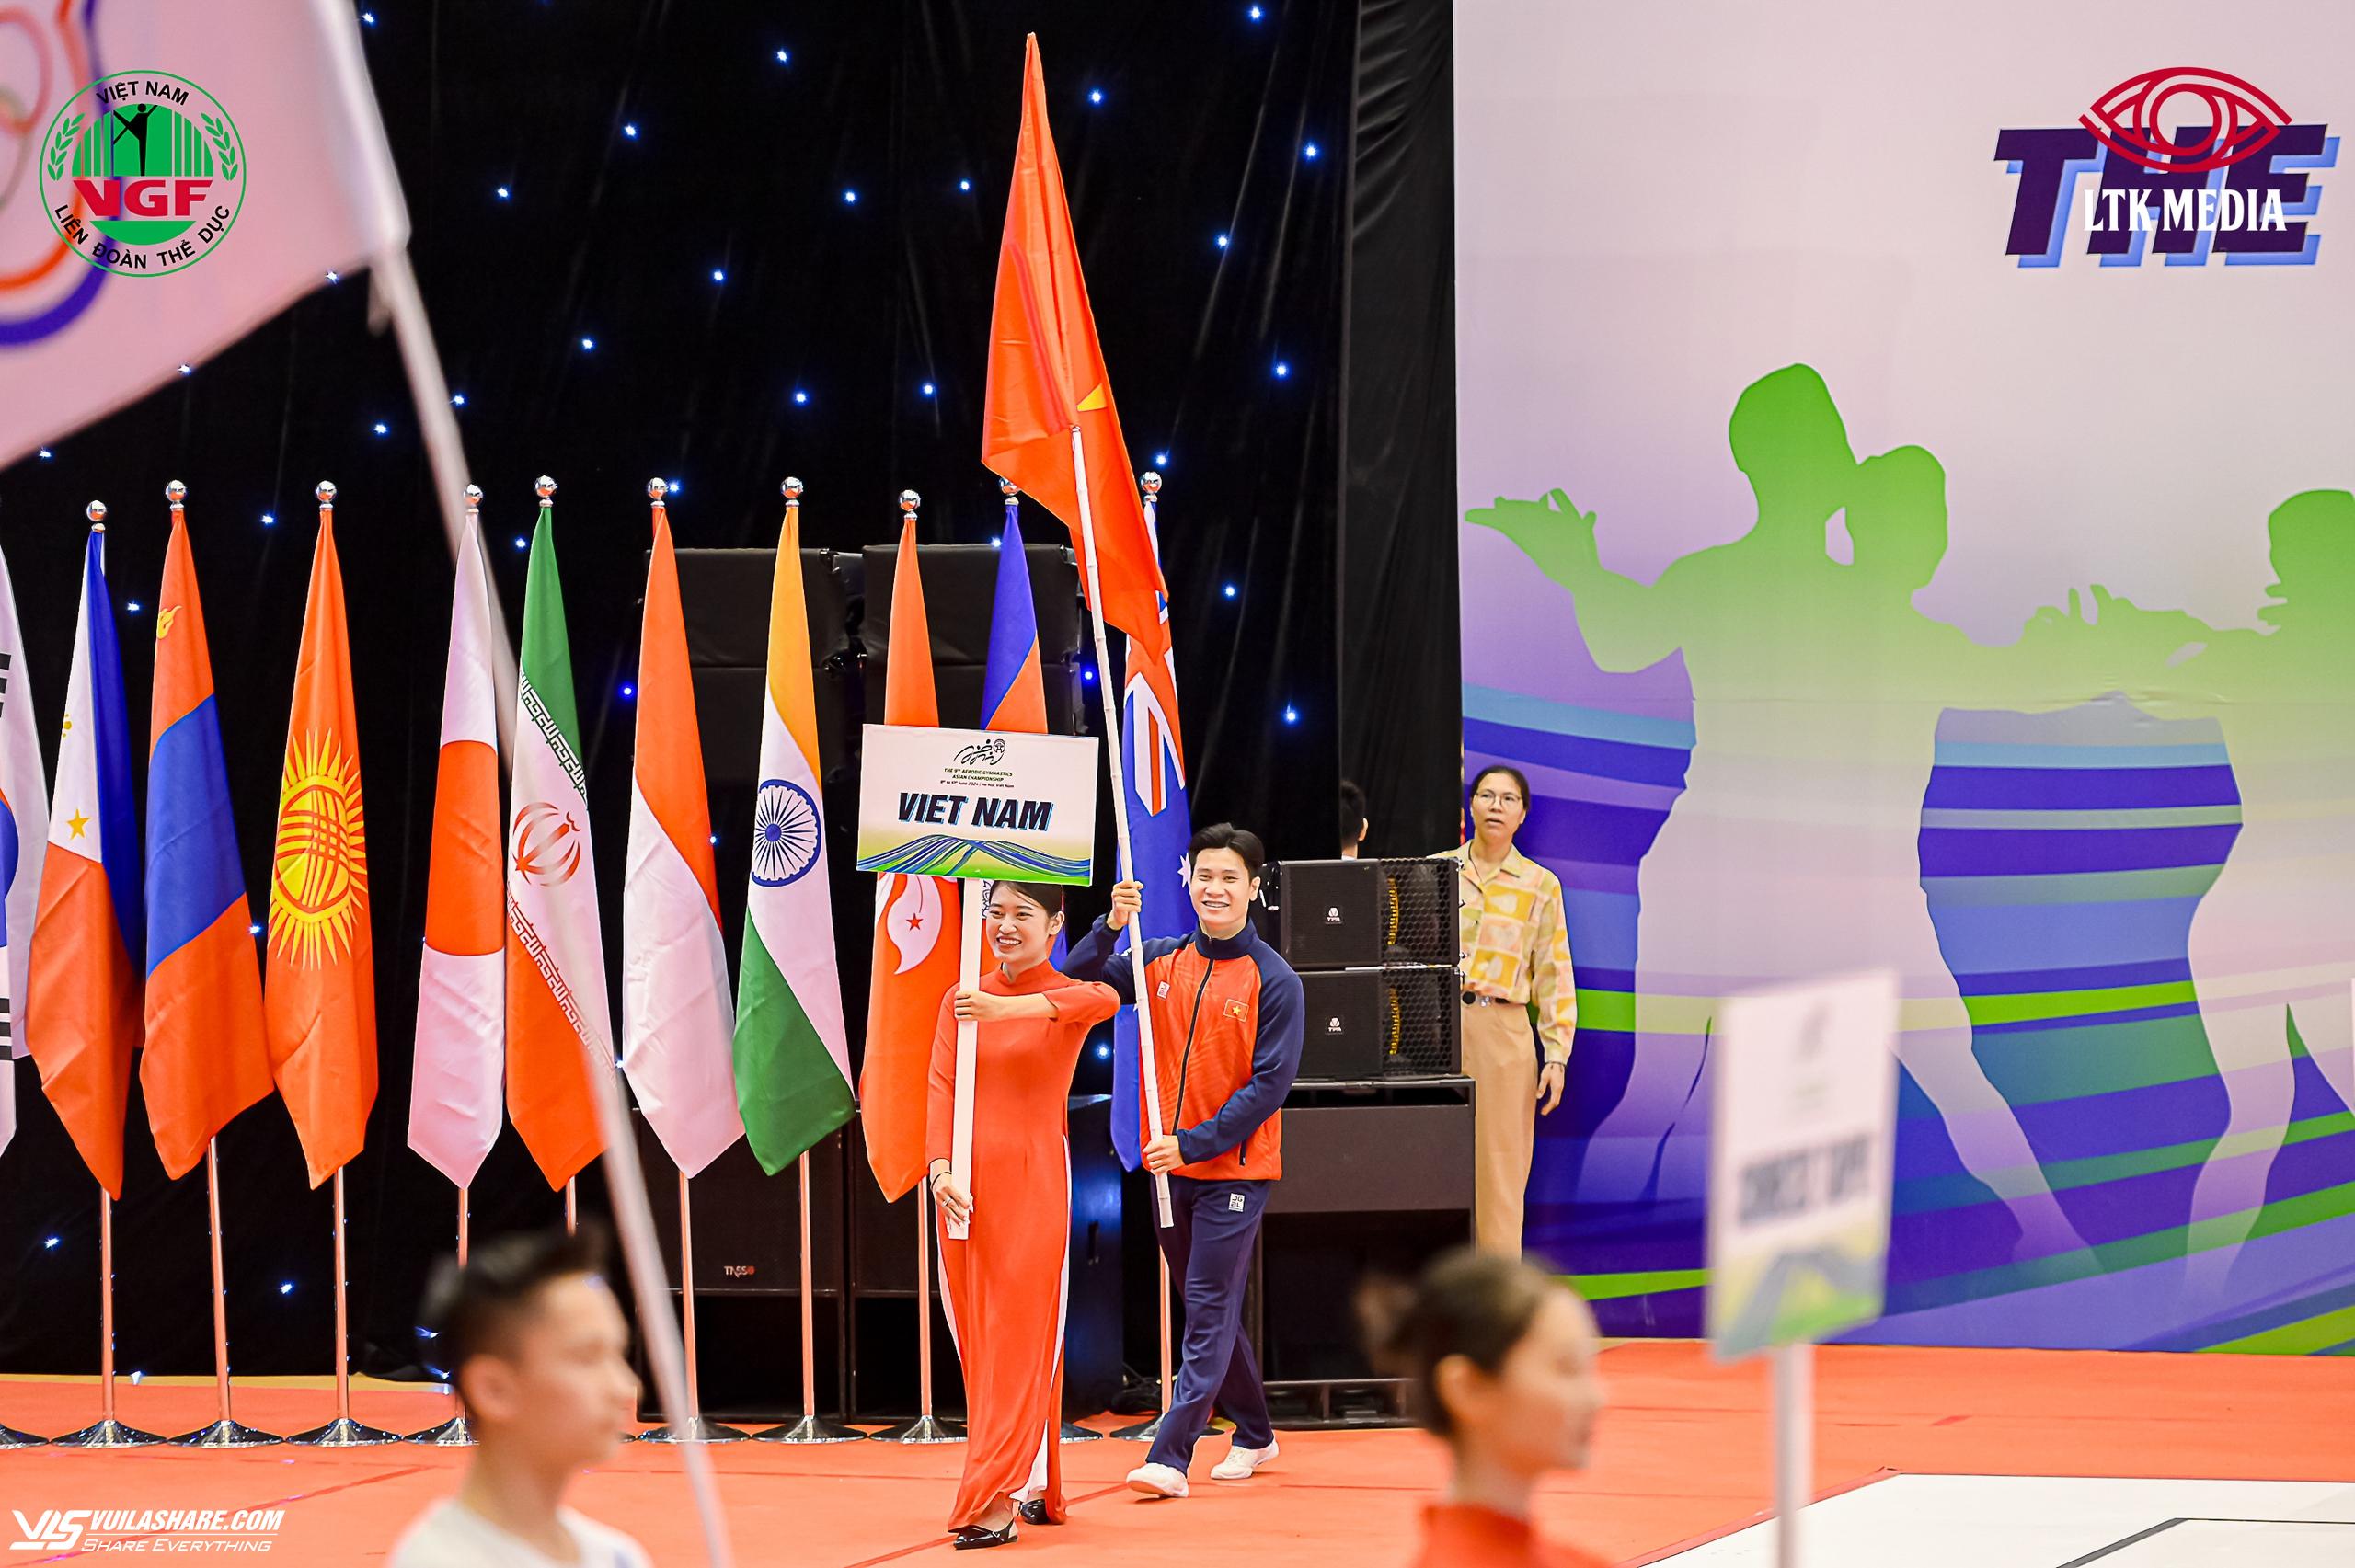 Giải vô địch thể dục aerobic châu Á lần 9 khai mạc, số lượng VĐV đông kỷ lục- Ảnh 3.